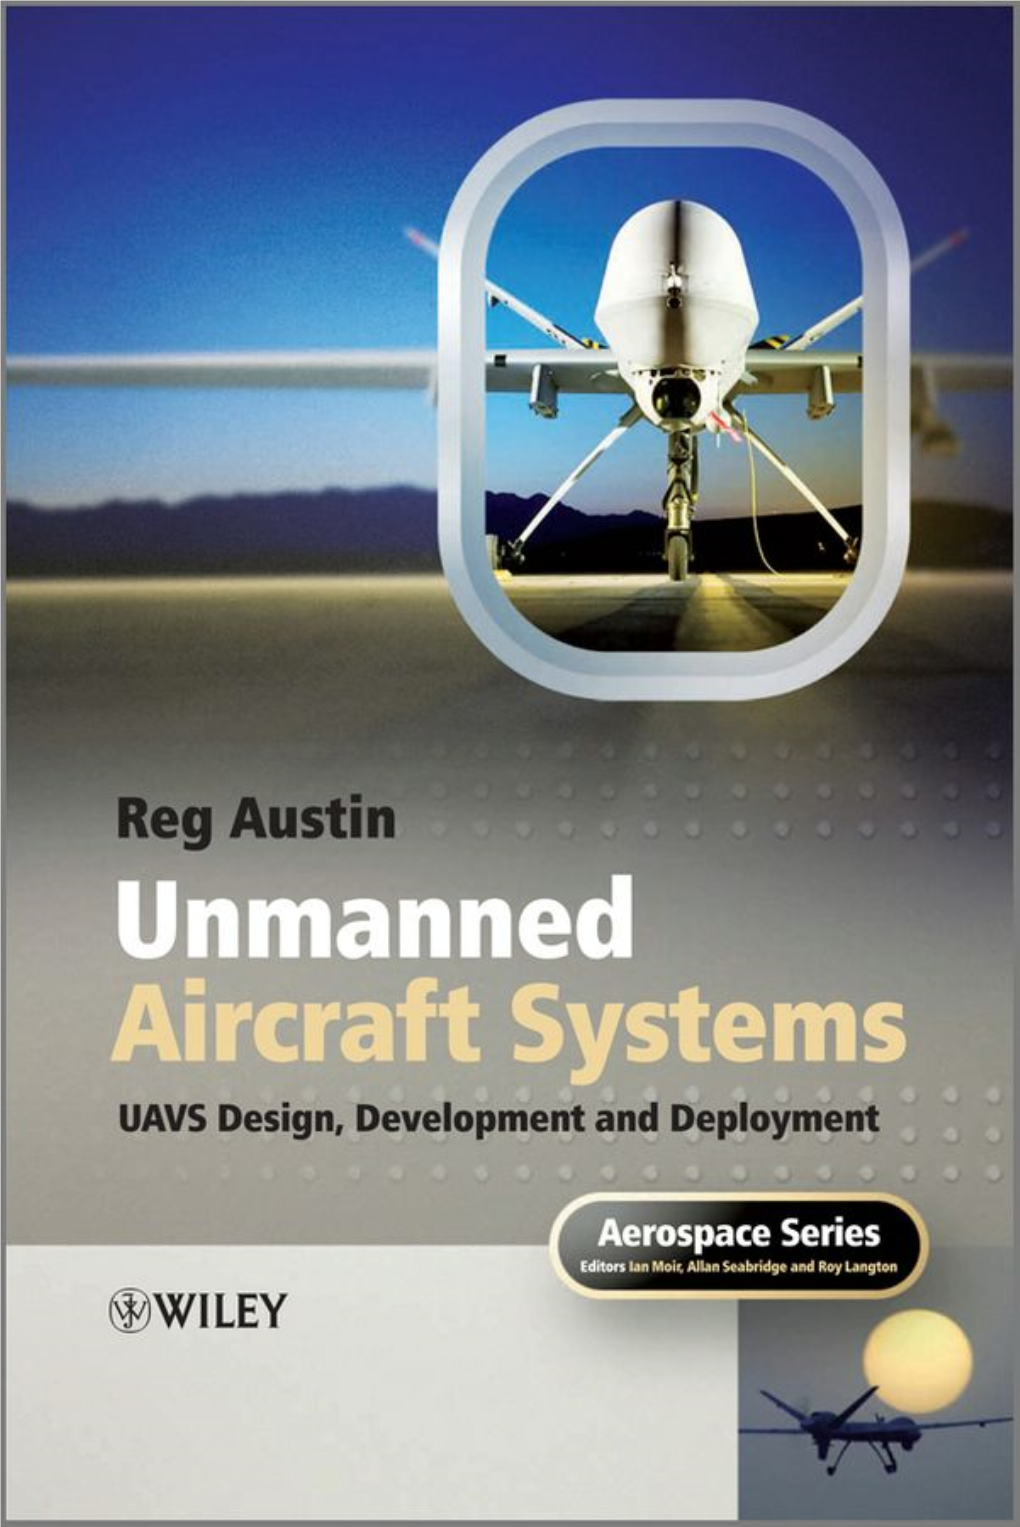 UAV Design, Development and Deployment